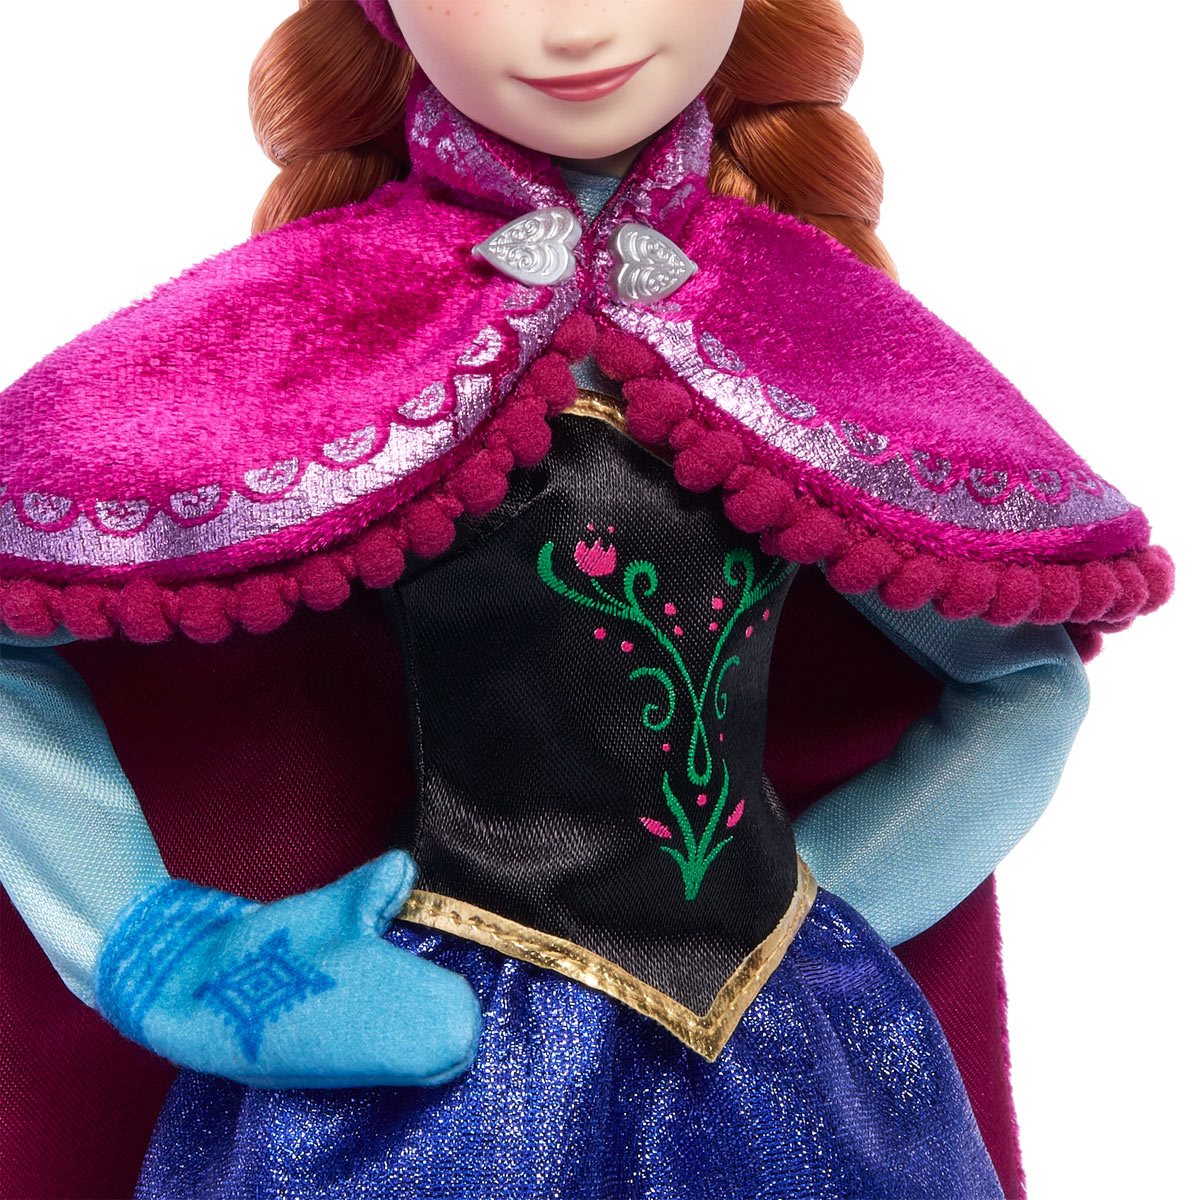 Hasbro Disney Frozen II Classic Fashion Elsa Doll - In Box Elsa